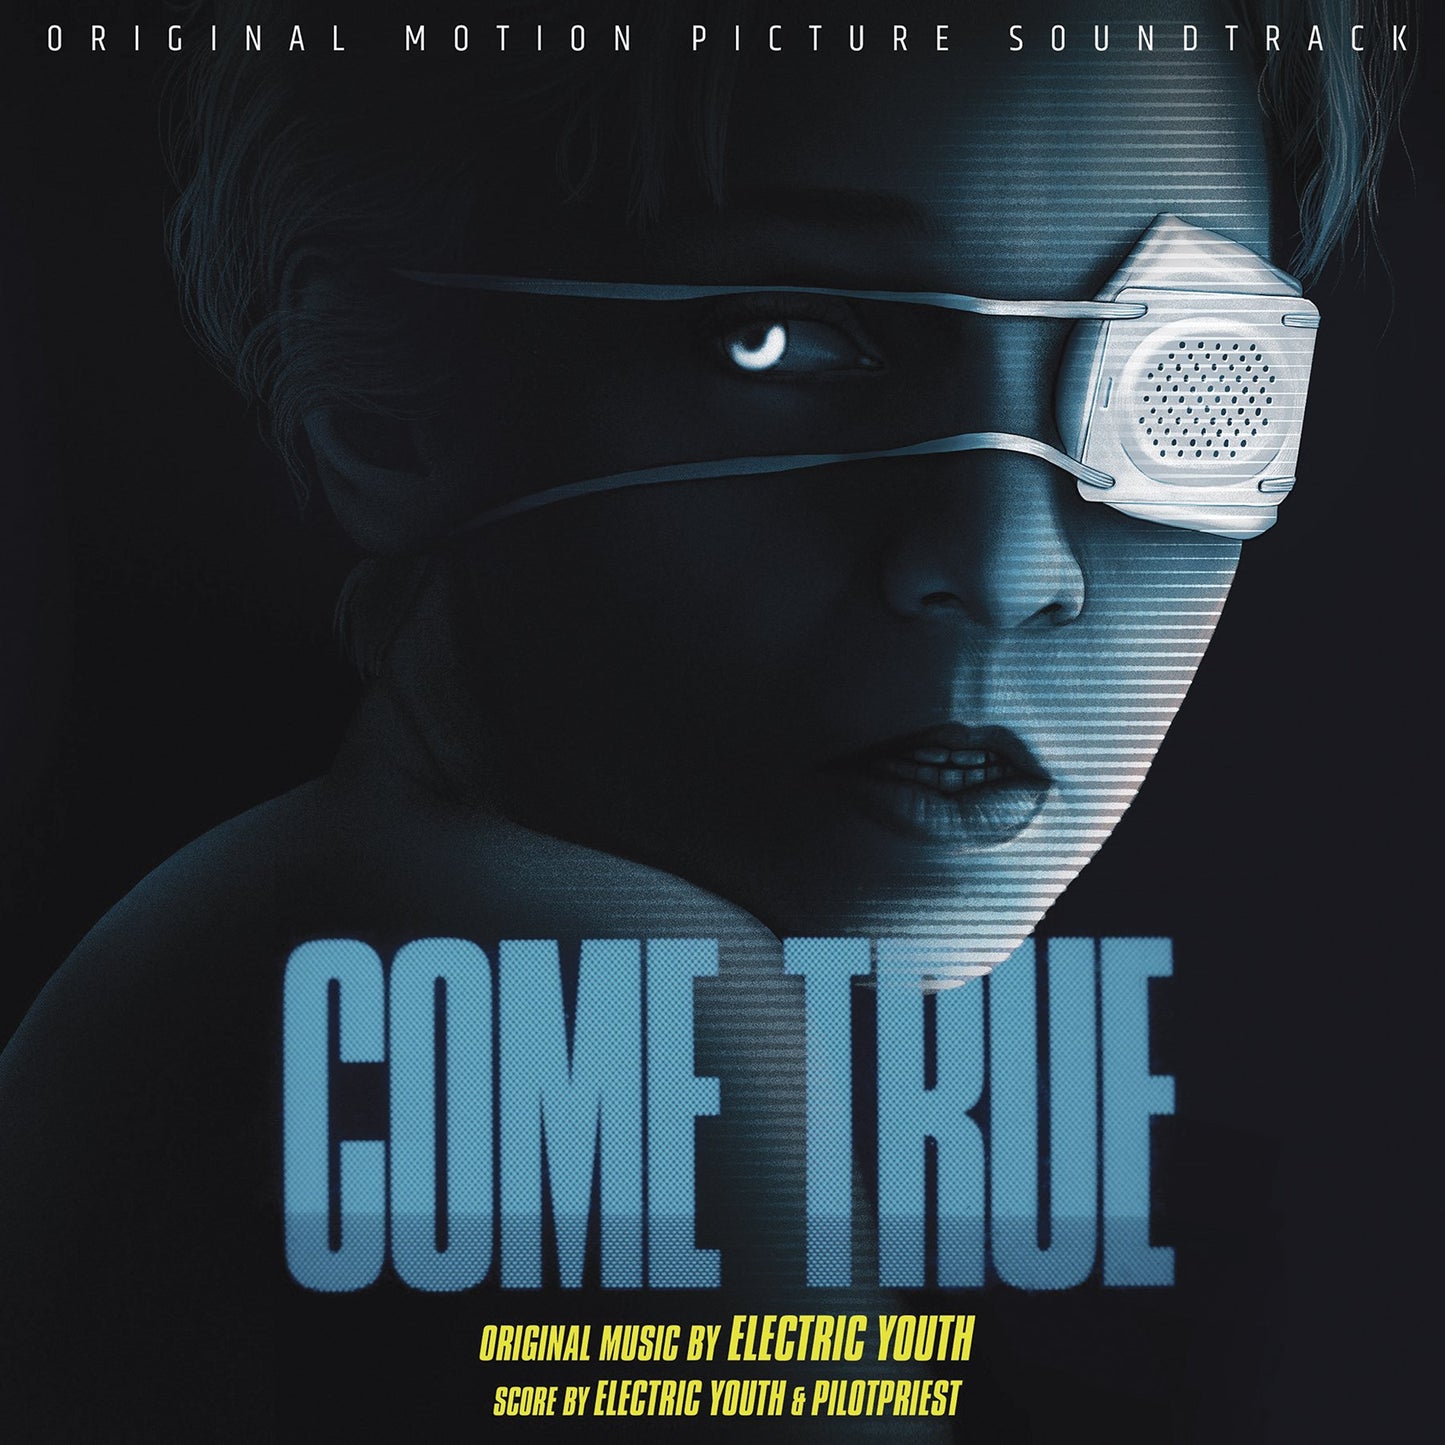 Come True - Original Motion Picture LP